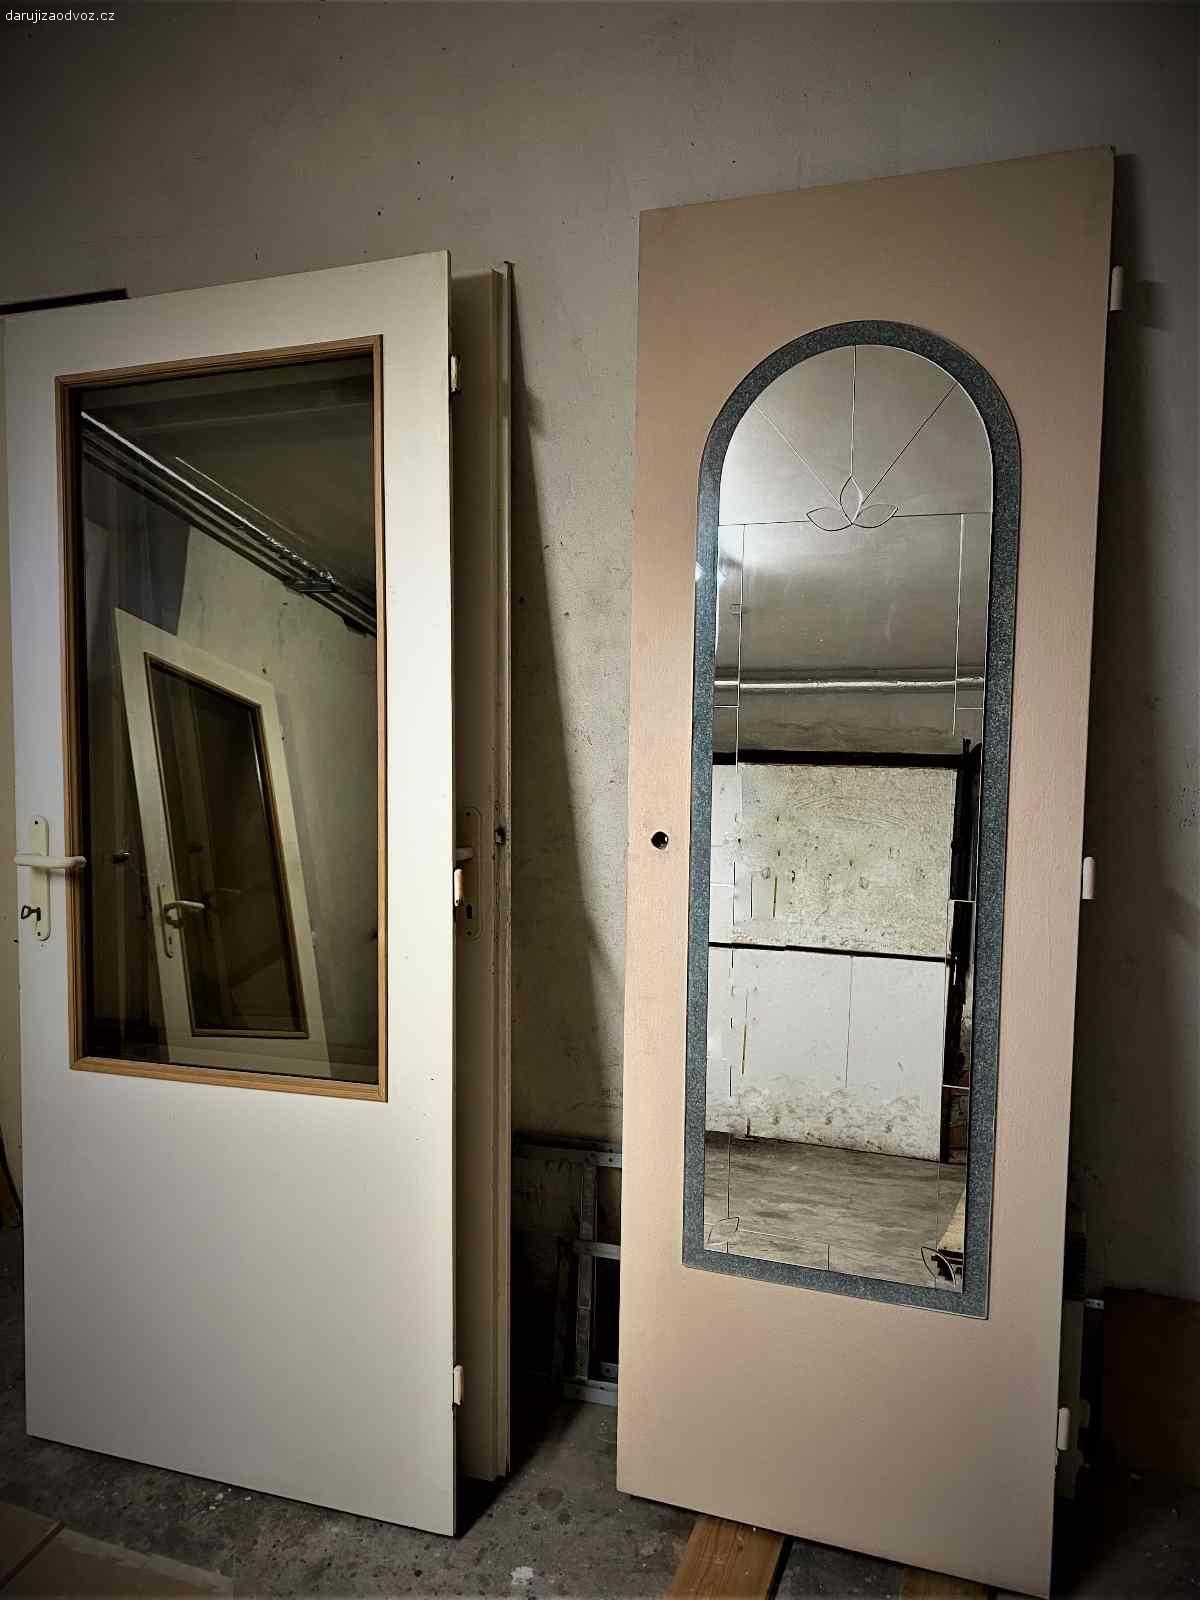 Interiérové dveře se zrcadlem P 60 cm. Interiérové dveře, barva slonová kost 
Daruji starší interiérové dveře do kovových zárubní vč. kování a klik. Dveře plné se zrcadlem, pravé P60 - 1 ks. Odvoz vlastní, z Červeného Kostelce.